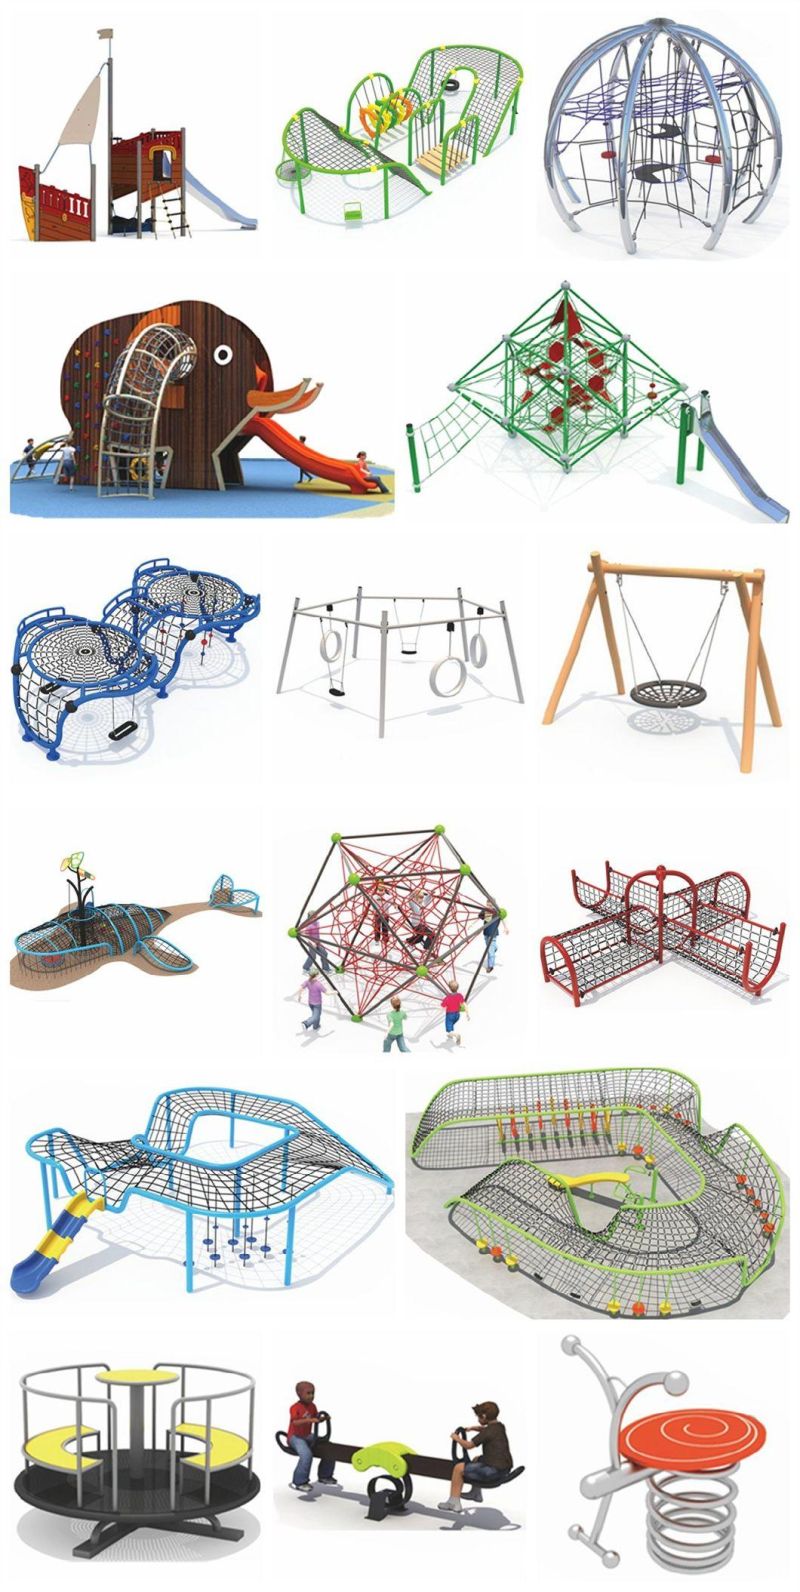 Kids Outdoor Playground Climbing Net Park Amusement Park Equipment Yq74